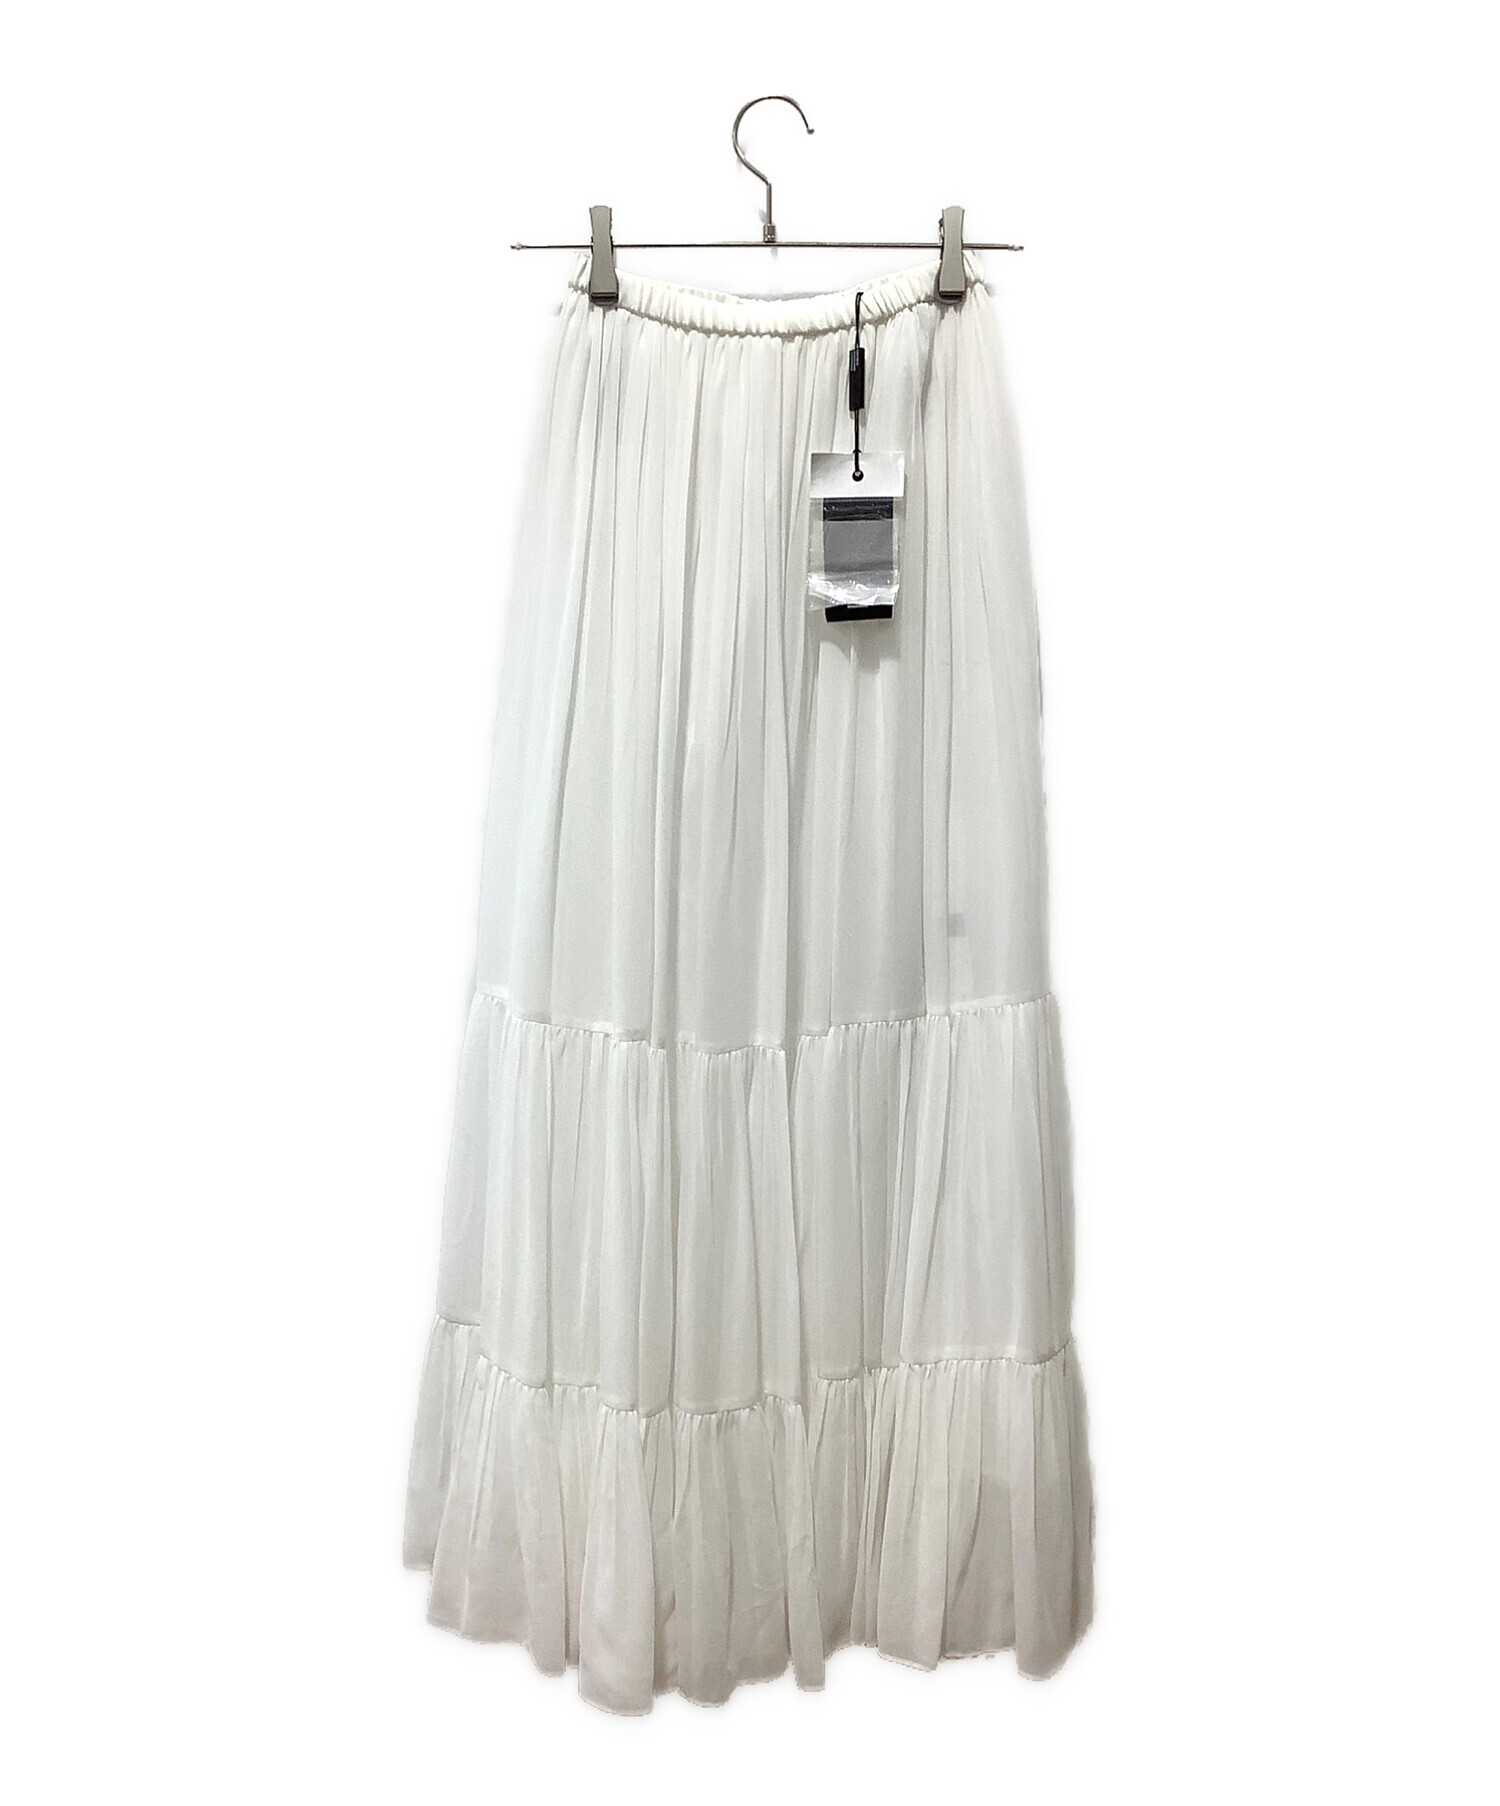 DOUBLE STANDARD CLOTHING (ダブルスタンダードクロージング) ティアードマキシスカート ホワイト サイズ:38 未使用品